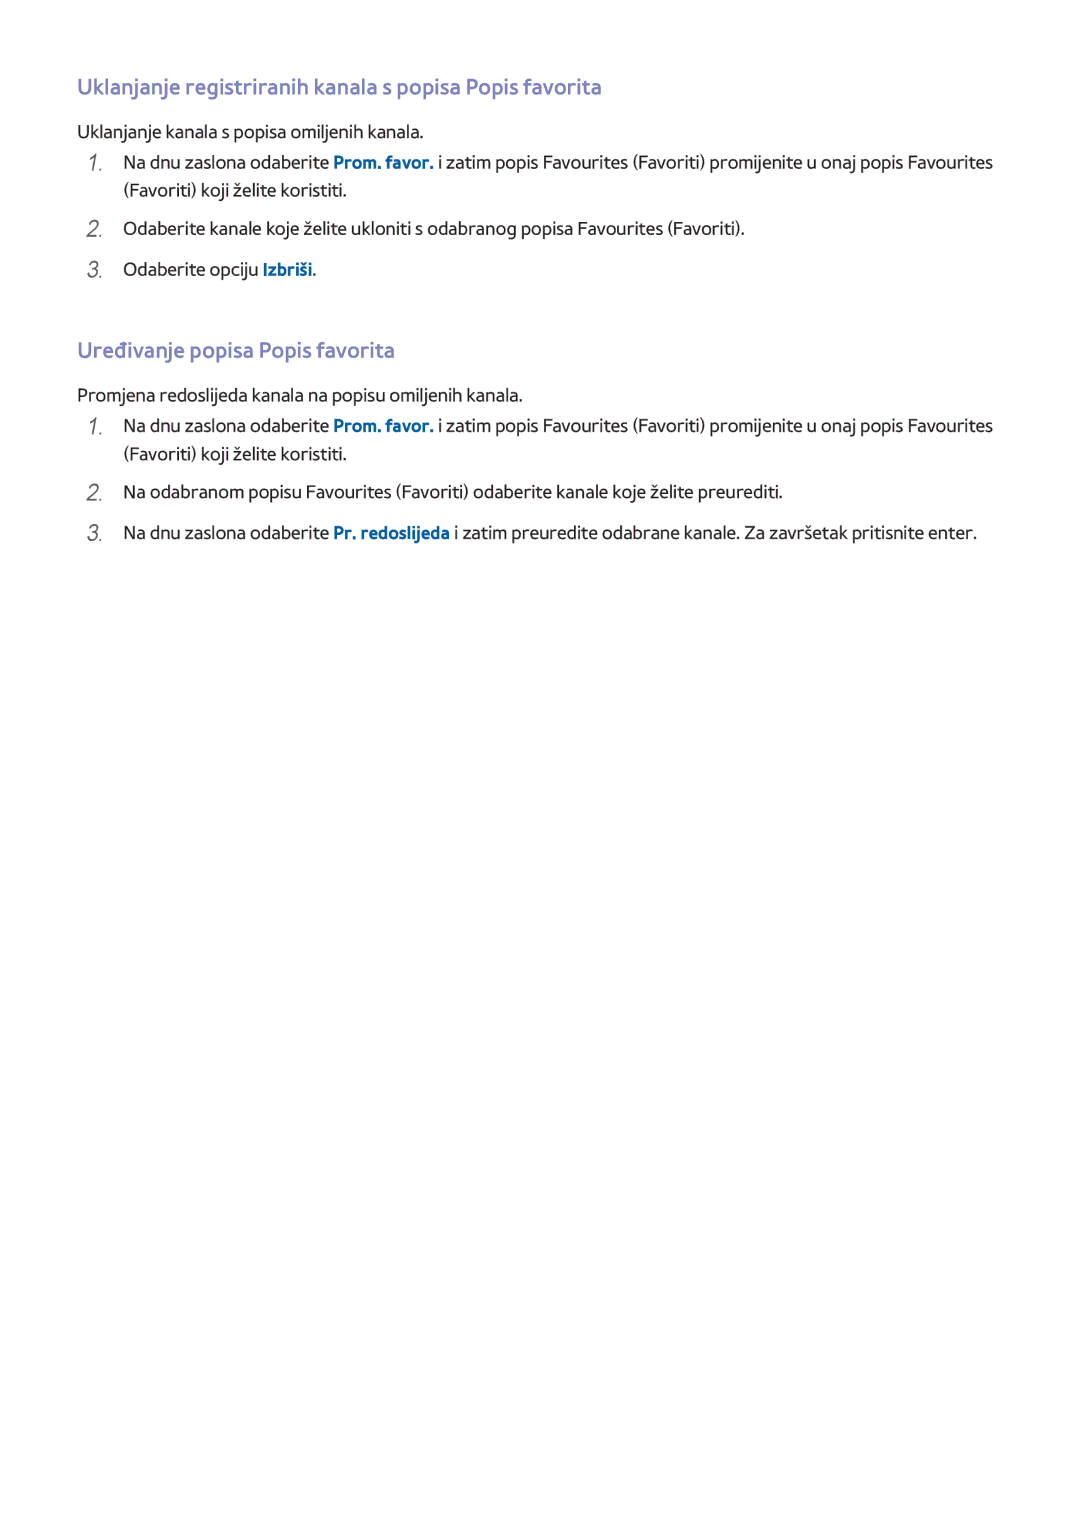 Samsung UE55HU8500TXXH manual Uklanjanje registriranih kanala s popisa Popis favorita, Uređivanje popisa Popis favorita 